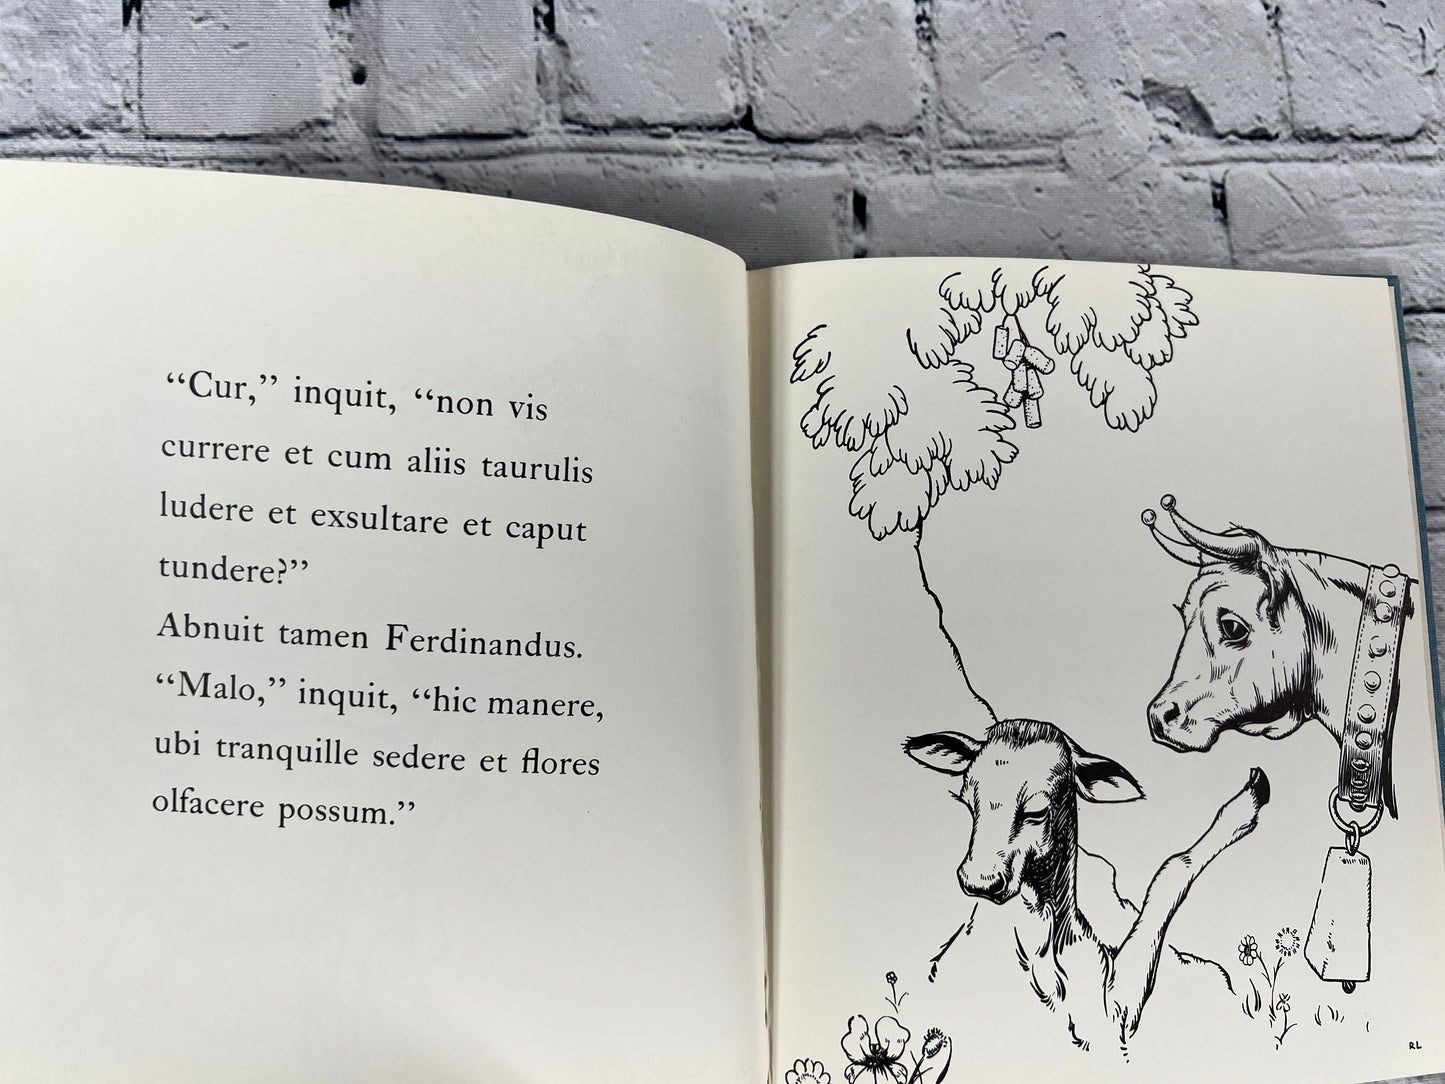 Ferdinandus Taurus The Story of Ferninand by Munro Leaf [1962 · Latin Language]